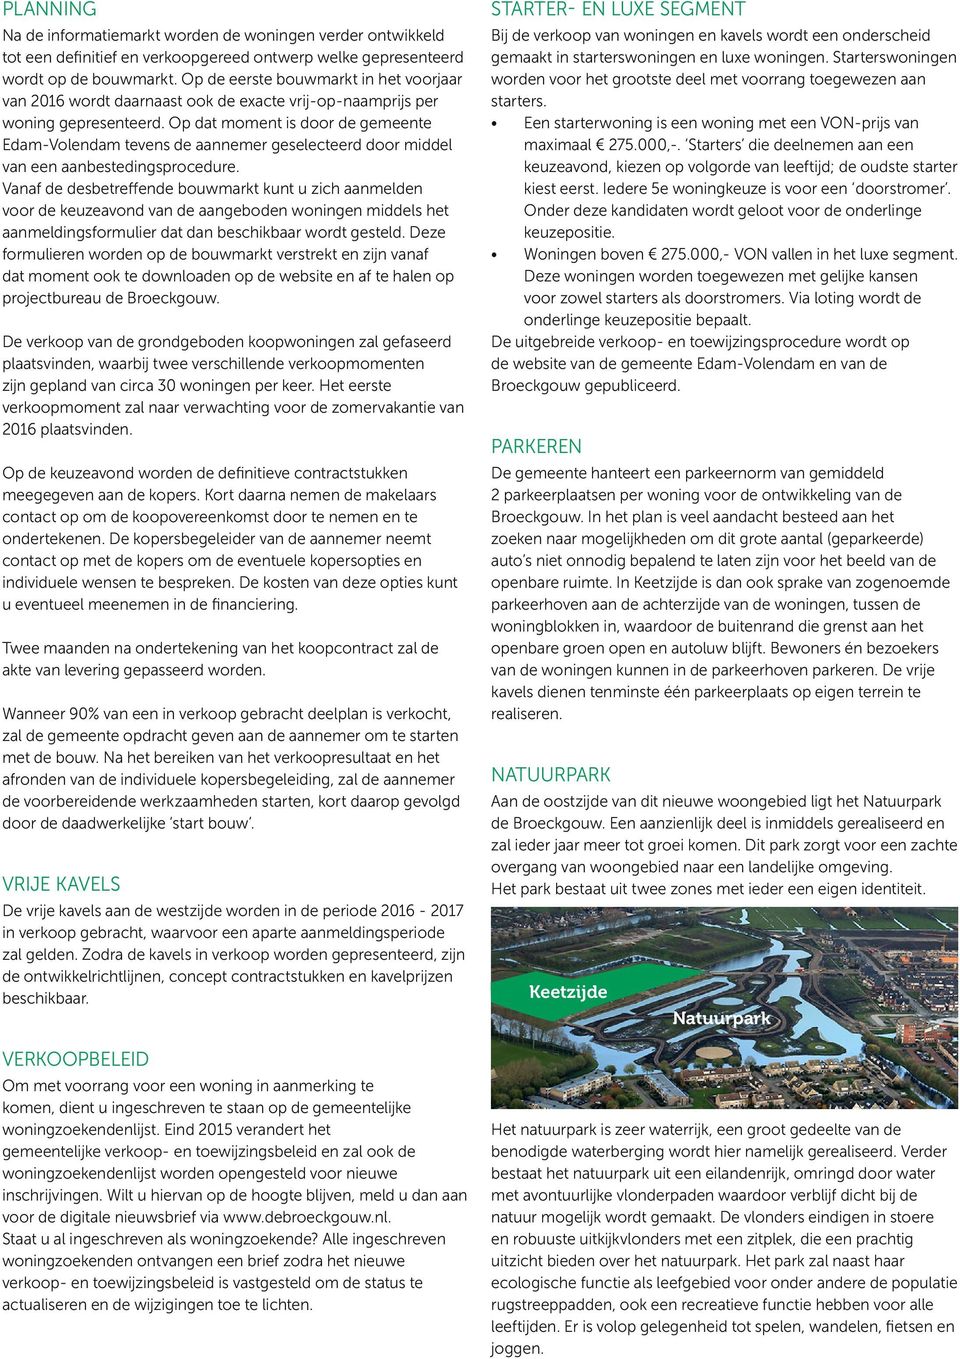 Op dat moment is door de gemeente Edam-Volendam tevens de aannemer geselecteerd door middel van een aanbestedingsprocedure.